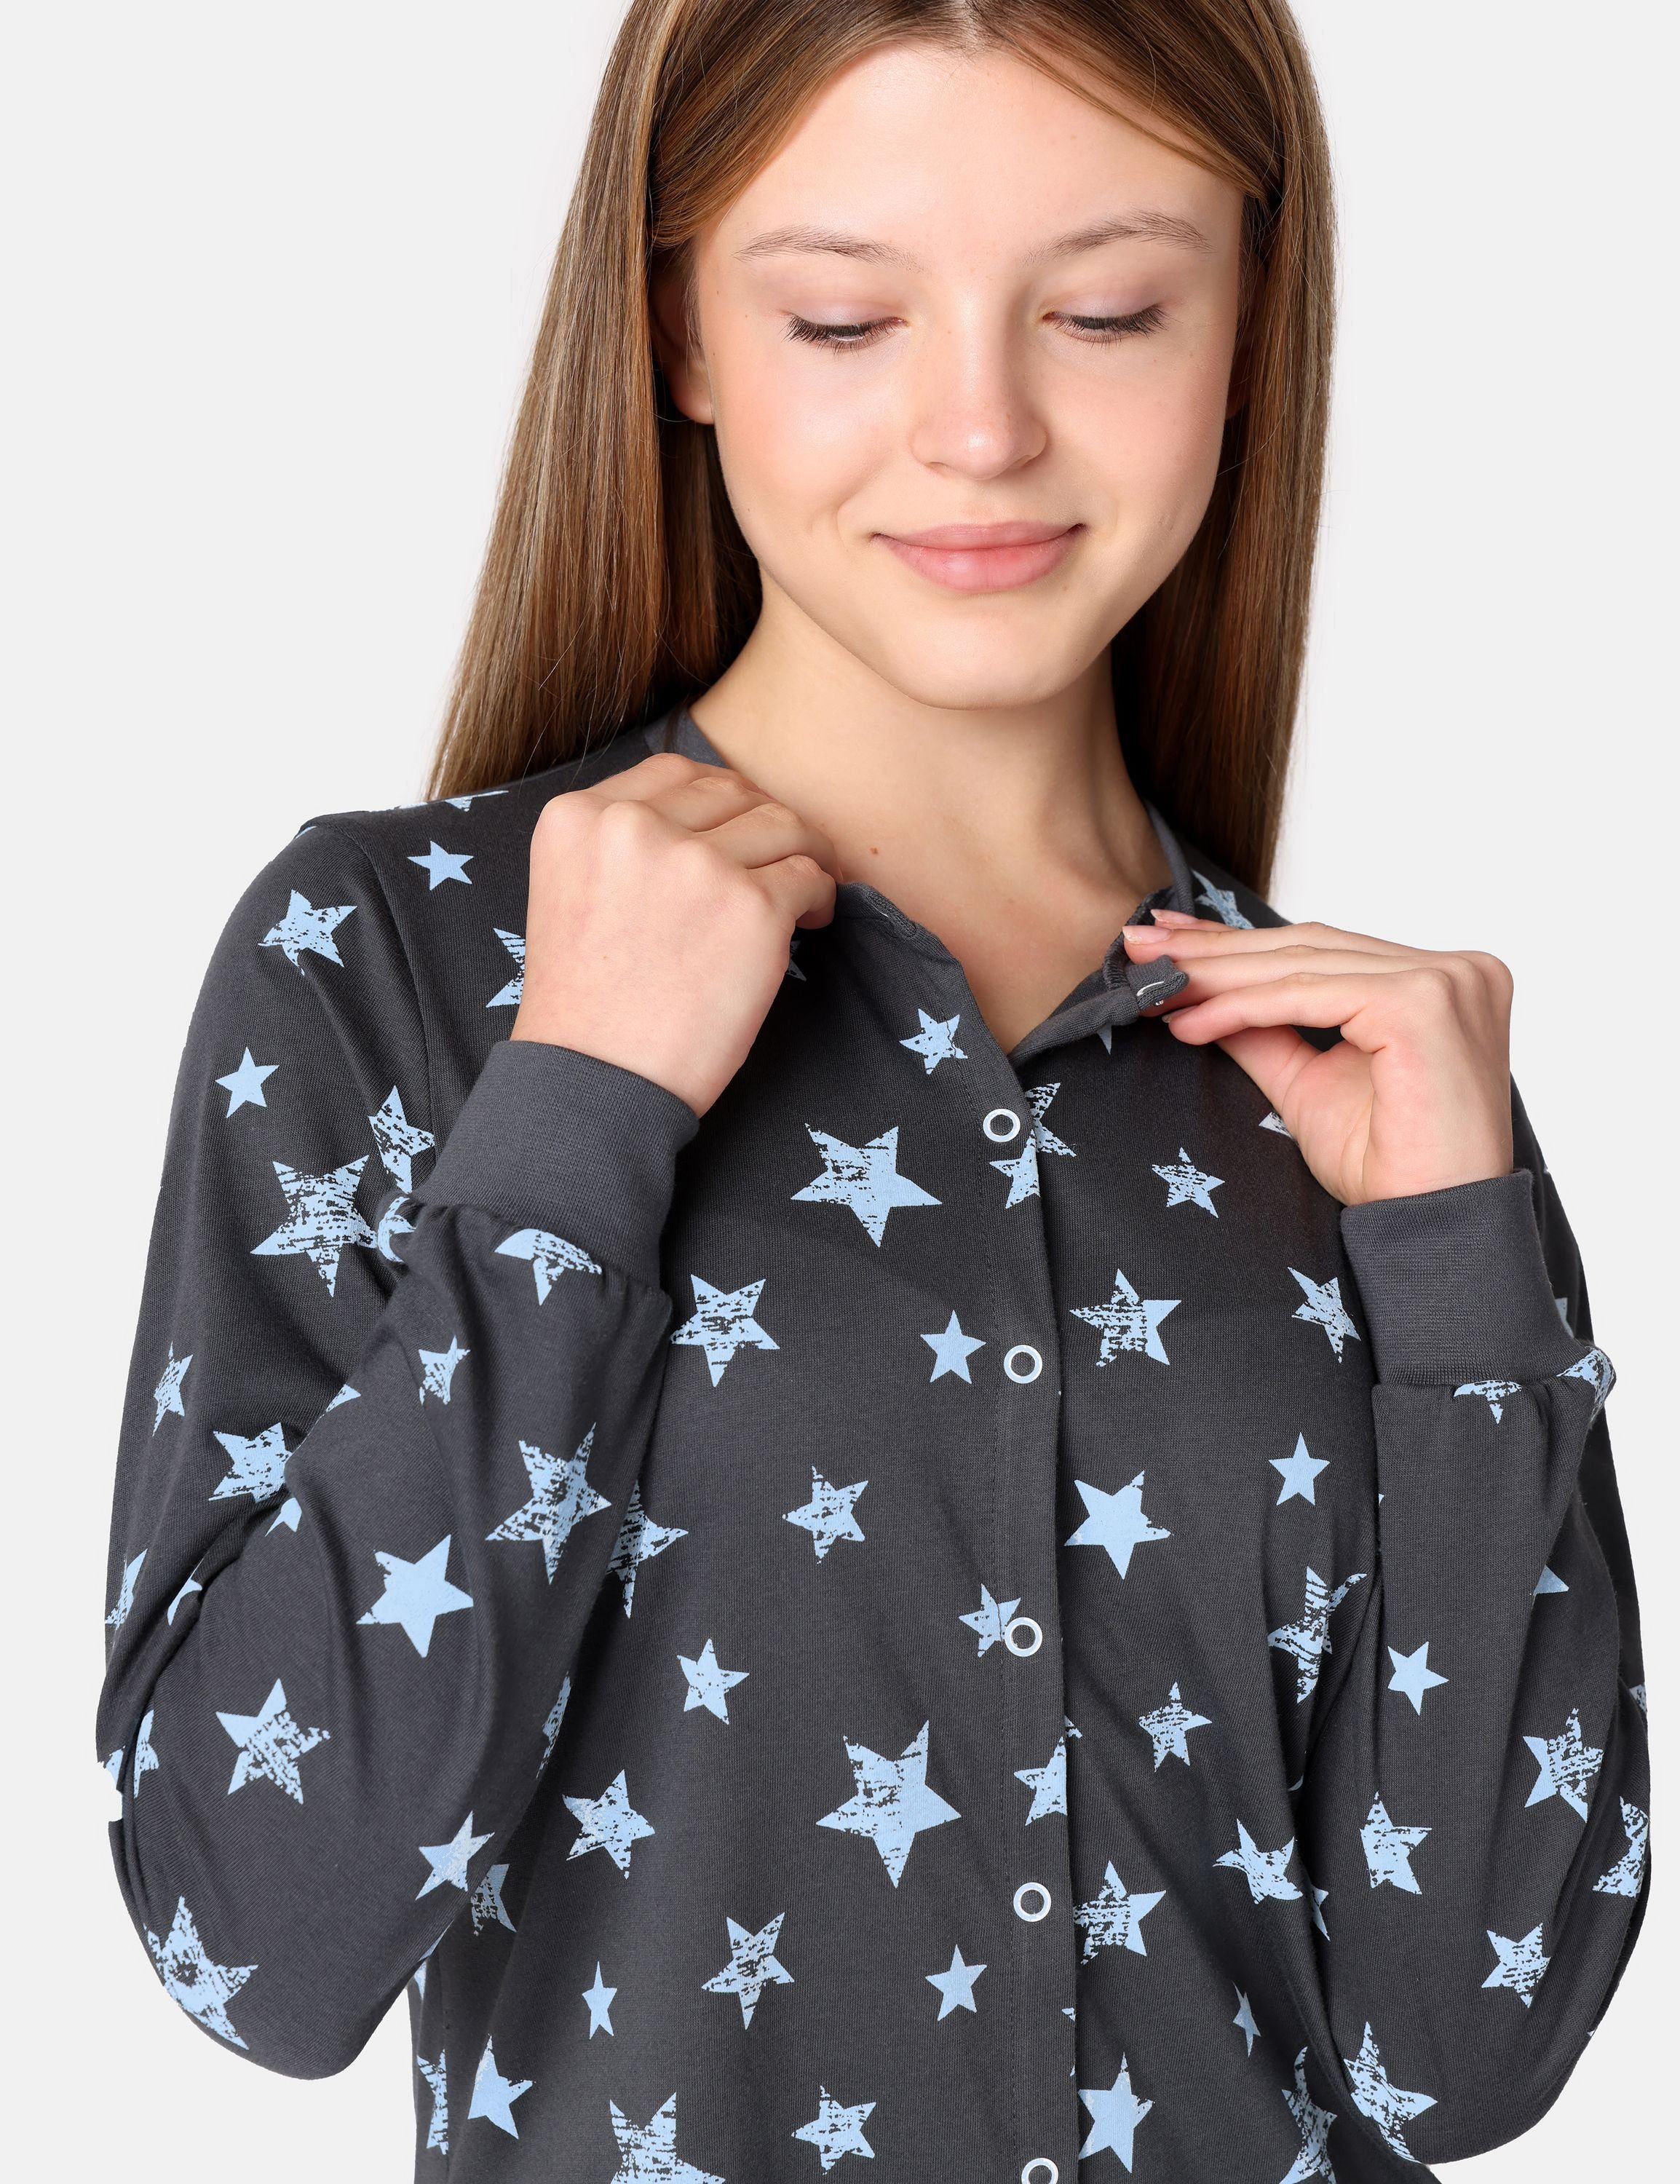 Merry Jugend Schlafanzug Grafit/Blau Schlafoverall Style Schlafanzug MS10-335 Mädchen Sterne